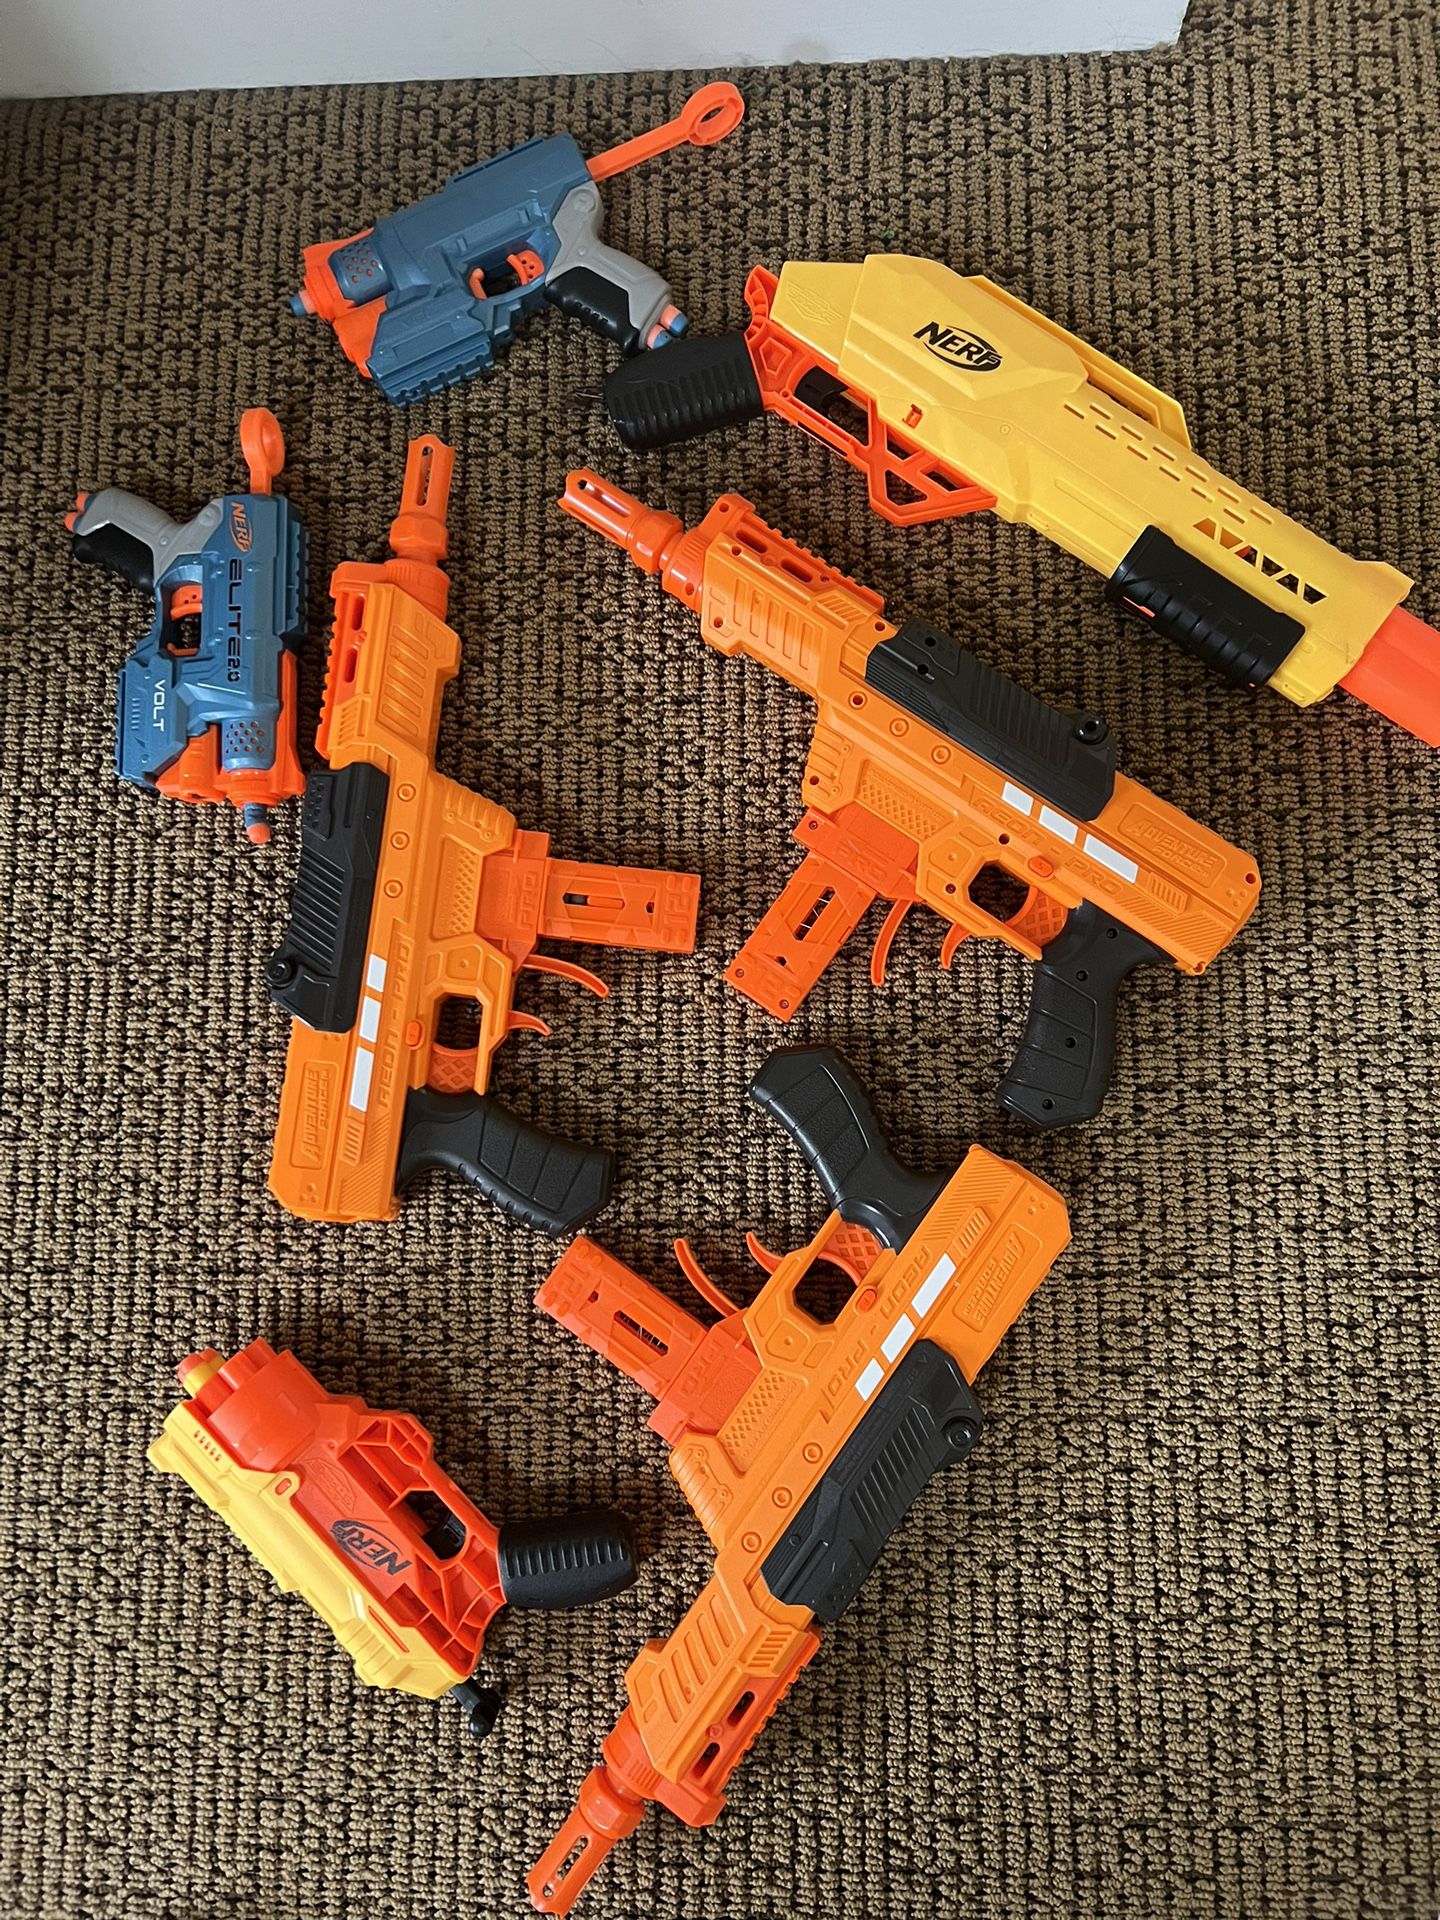 Nerf Guns For Dale 